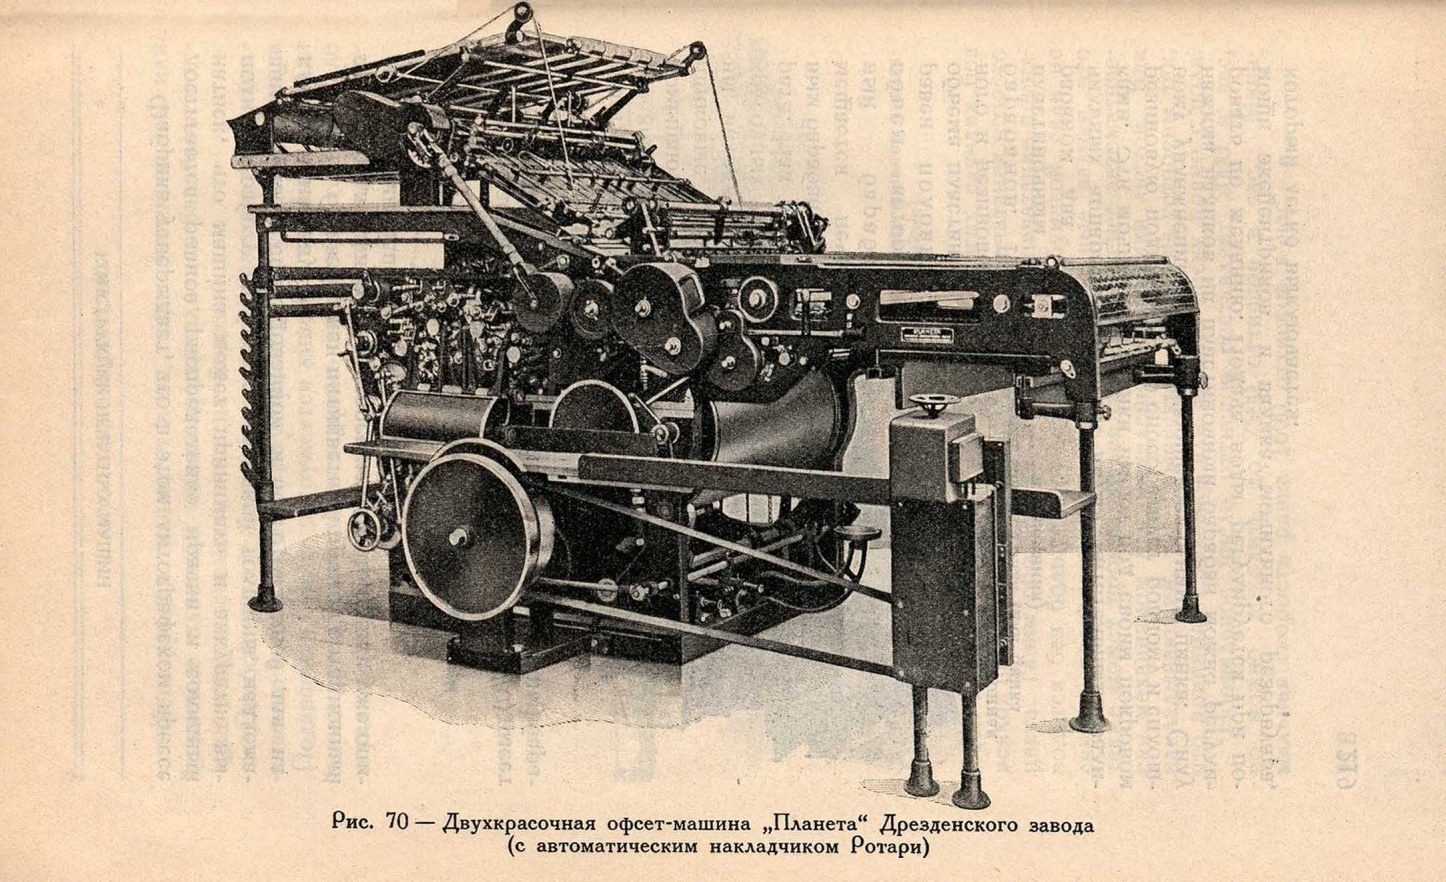 Двухкрасочная офсет-машина „Планета“ Дрезденского завода